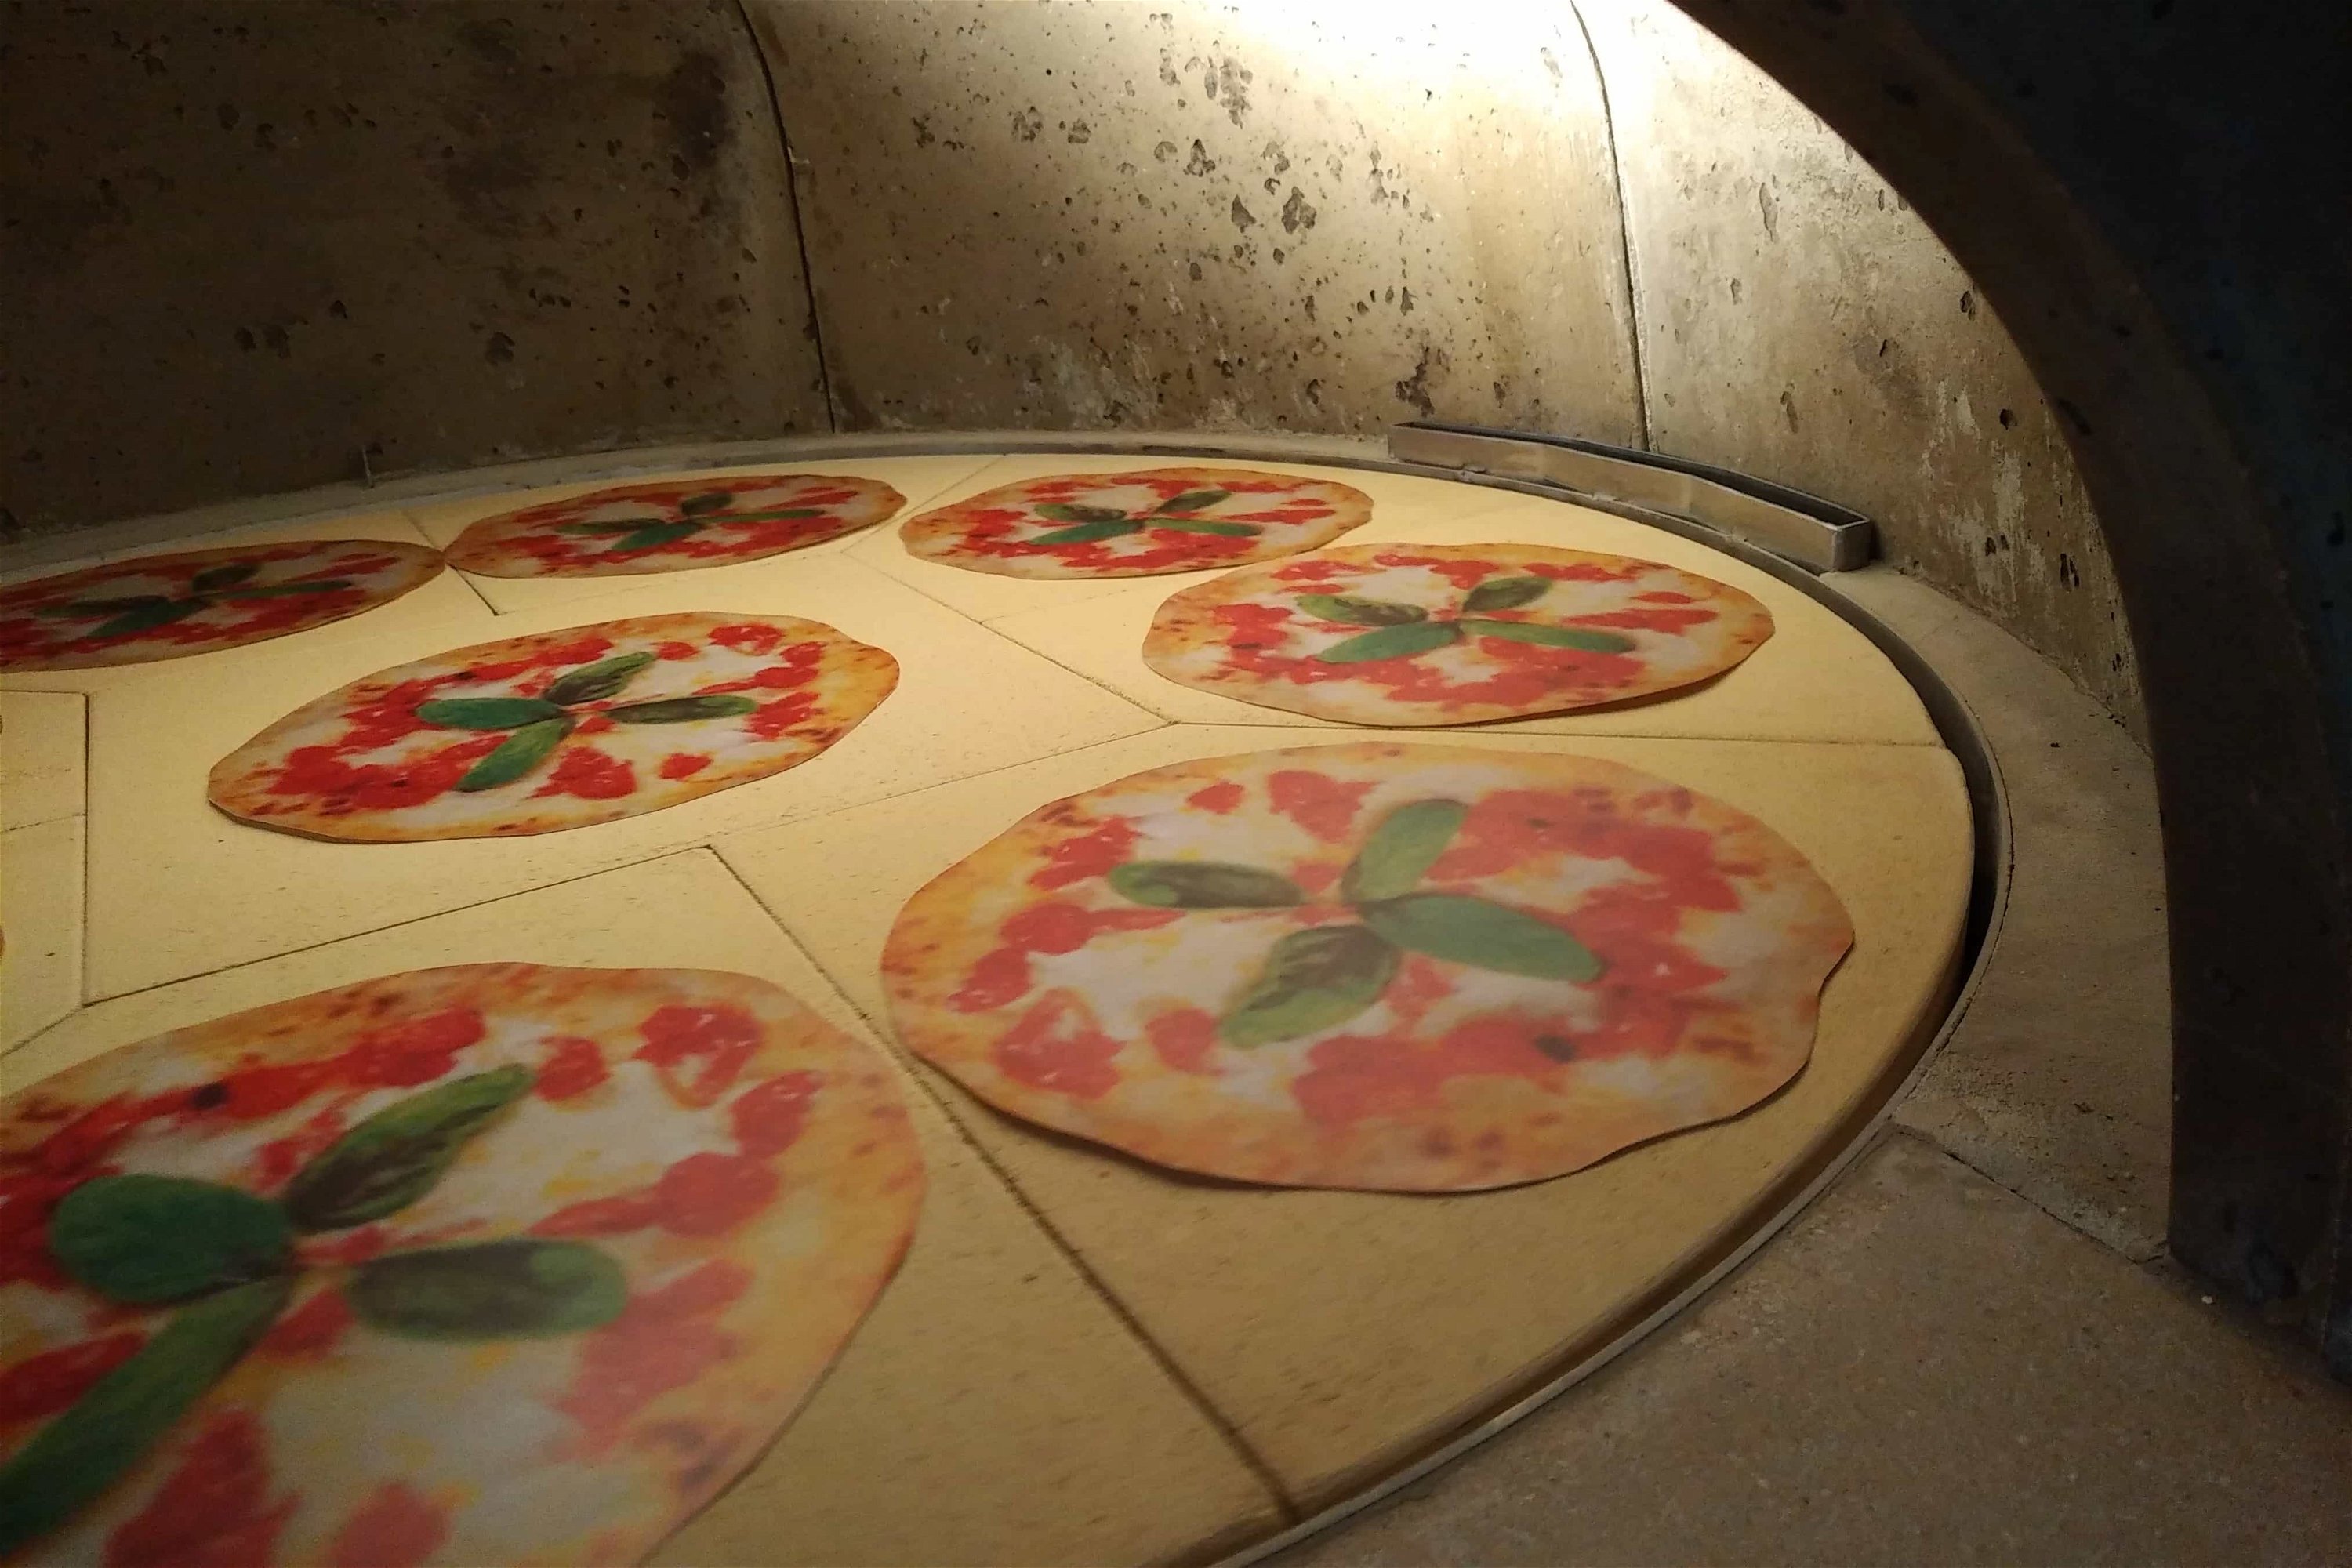 Gaspizzaofen Valoriani Rotativo: rotierender Pizzaofen, quadratisch, 120cm Durchmesser, für Gastro